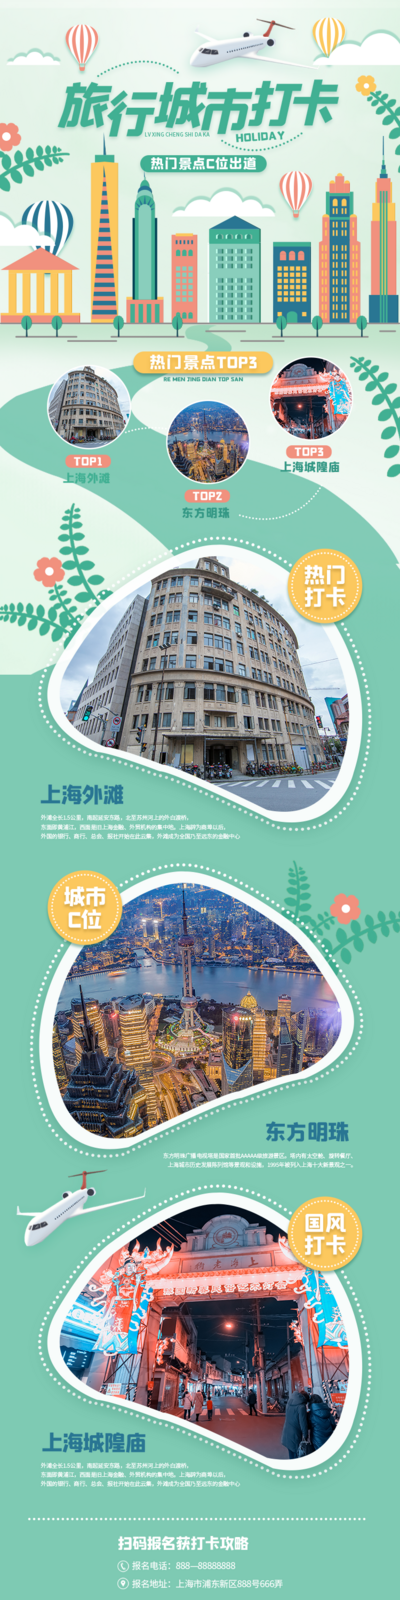 【南门网】广告 旅游 长图 旅行 打卡 城市 上海 地标 风景